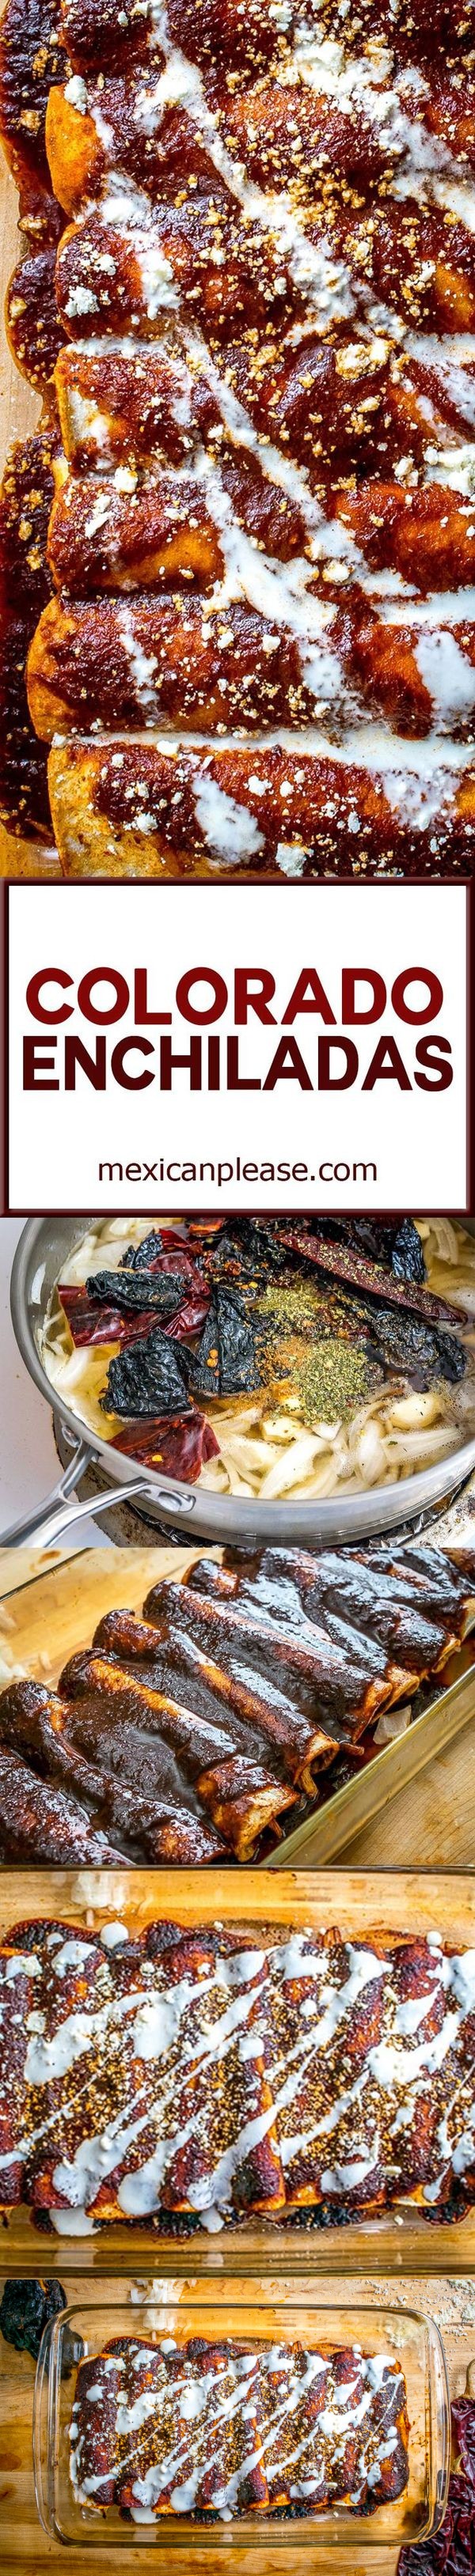 Colorado Enchiladas